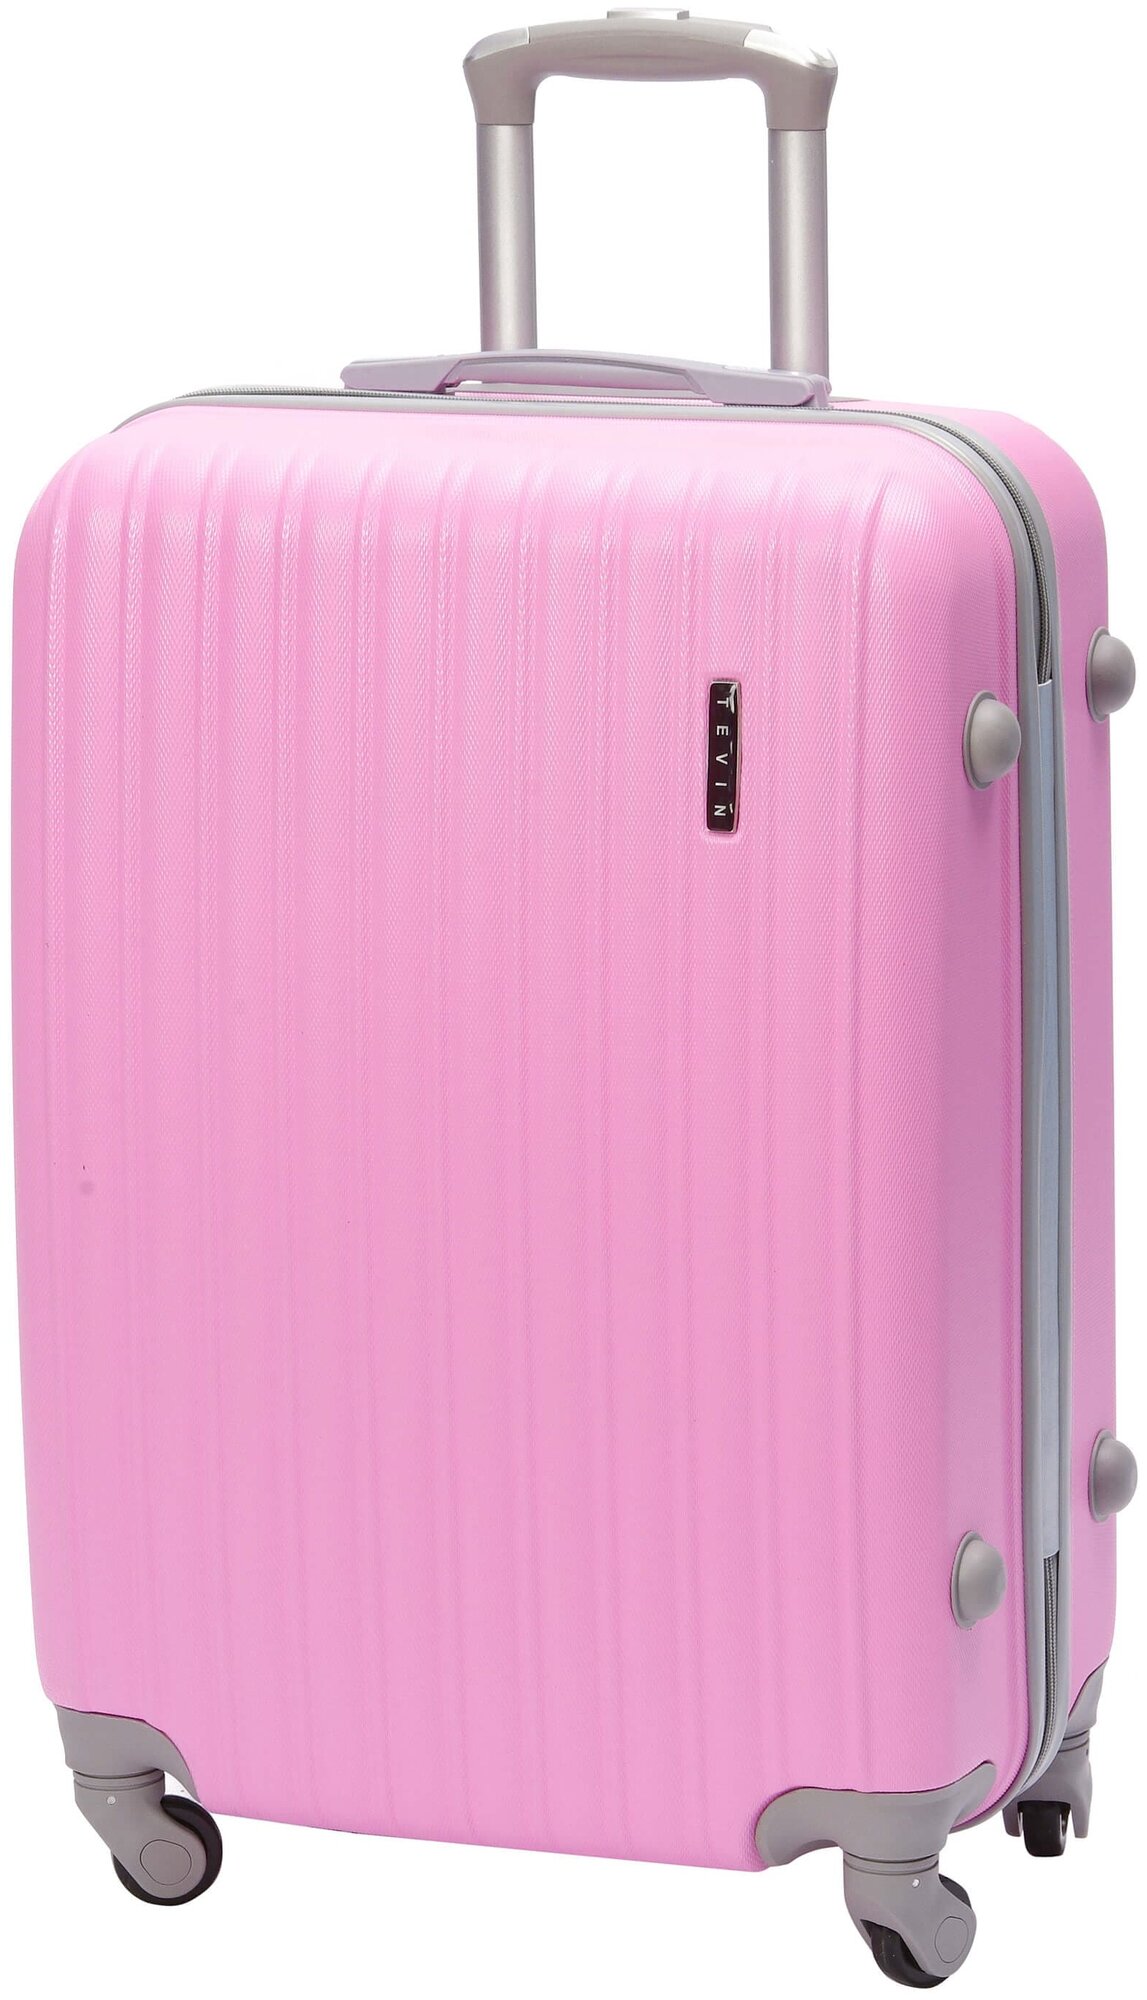 Чемодан на колесах дорожный средний багаж для путешествий s+ TEVIN размер С+ 60 см 52 л легкий 2.6 кг небольшой, прочный abs пластик Розовый нежный